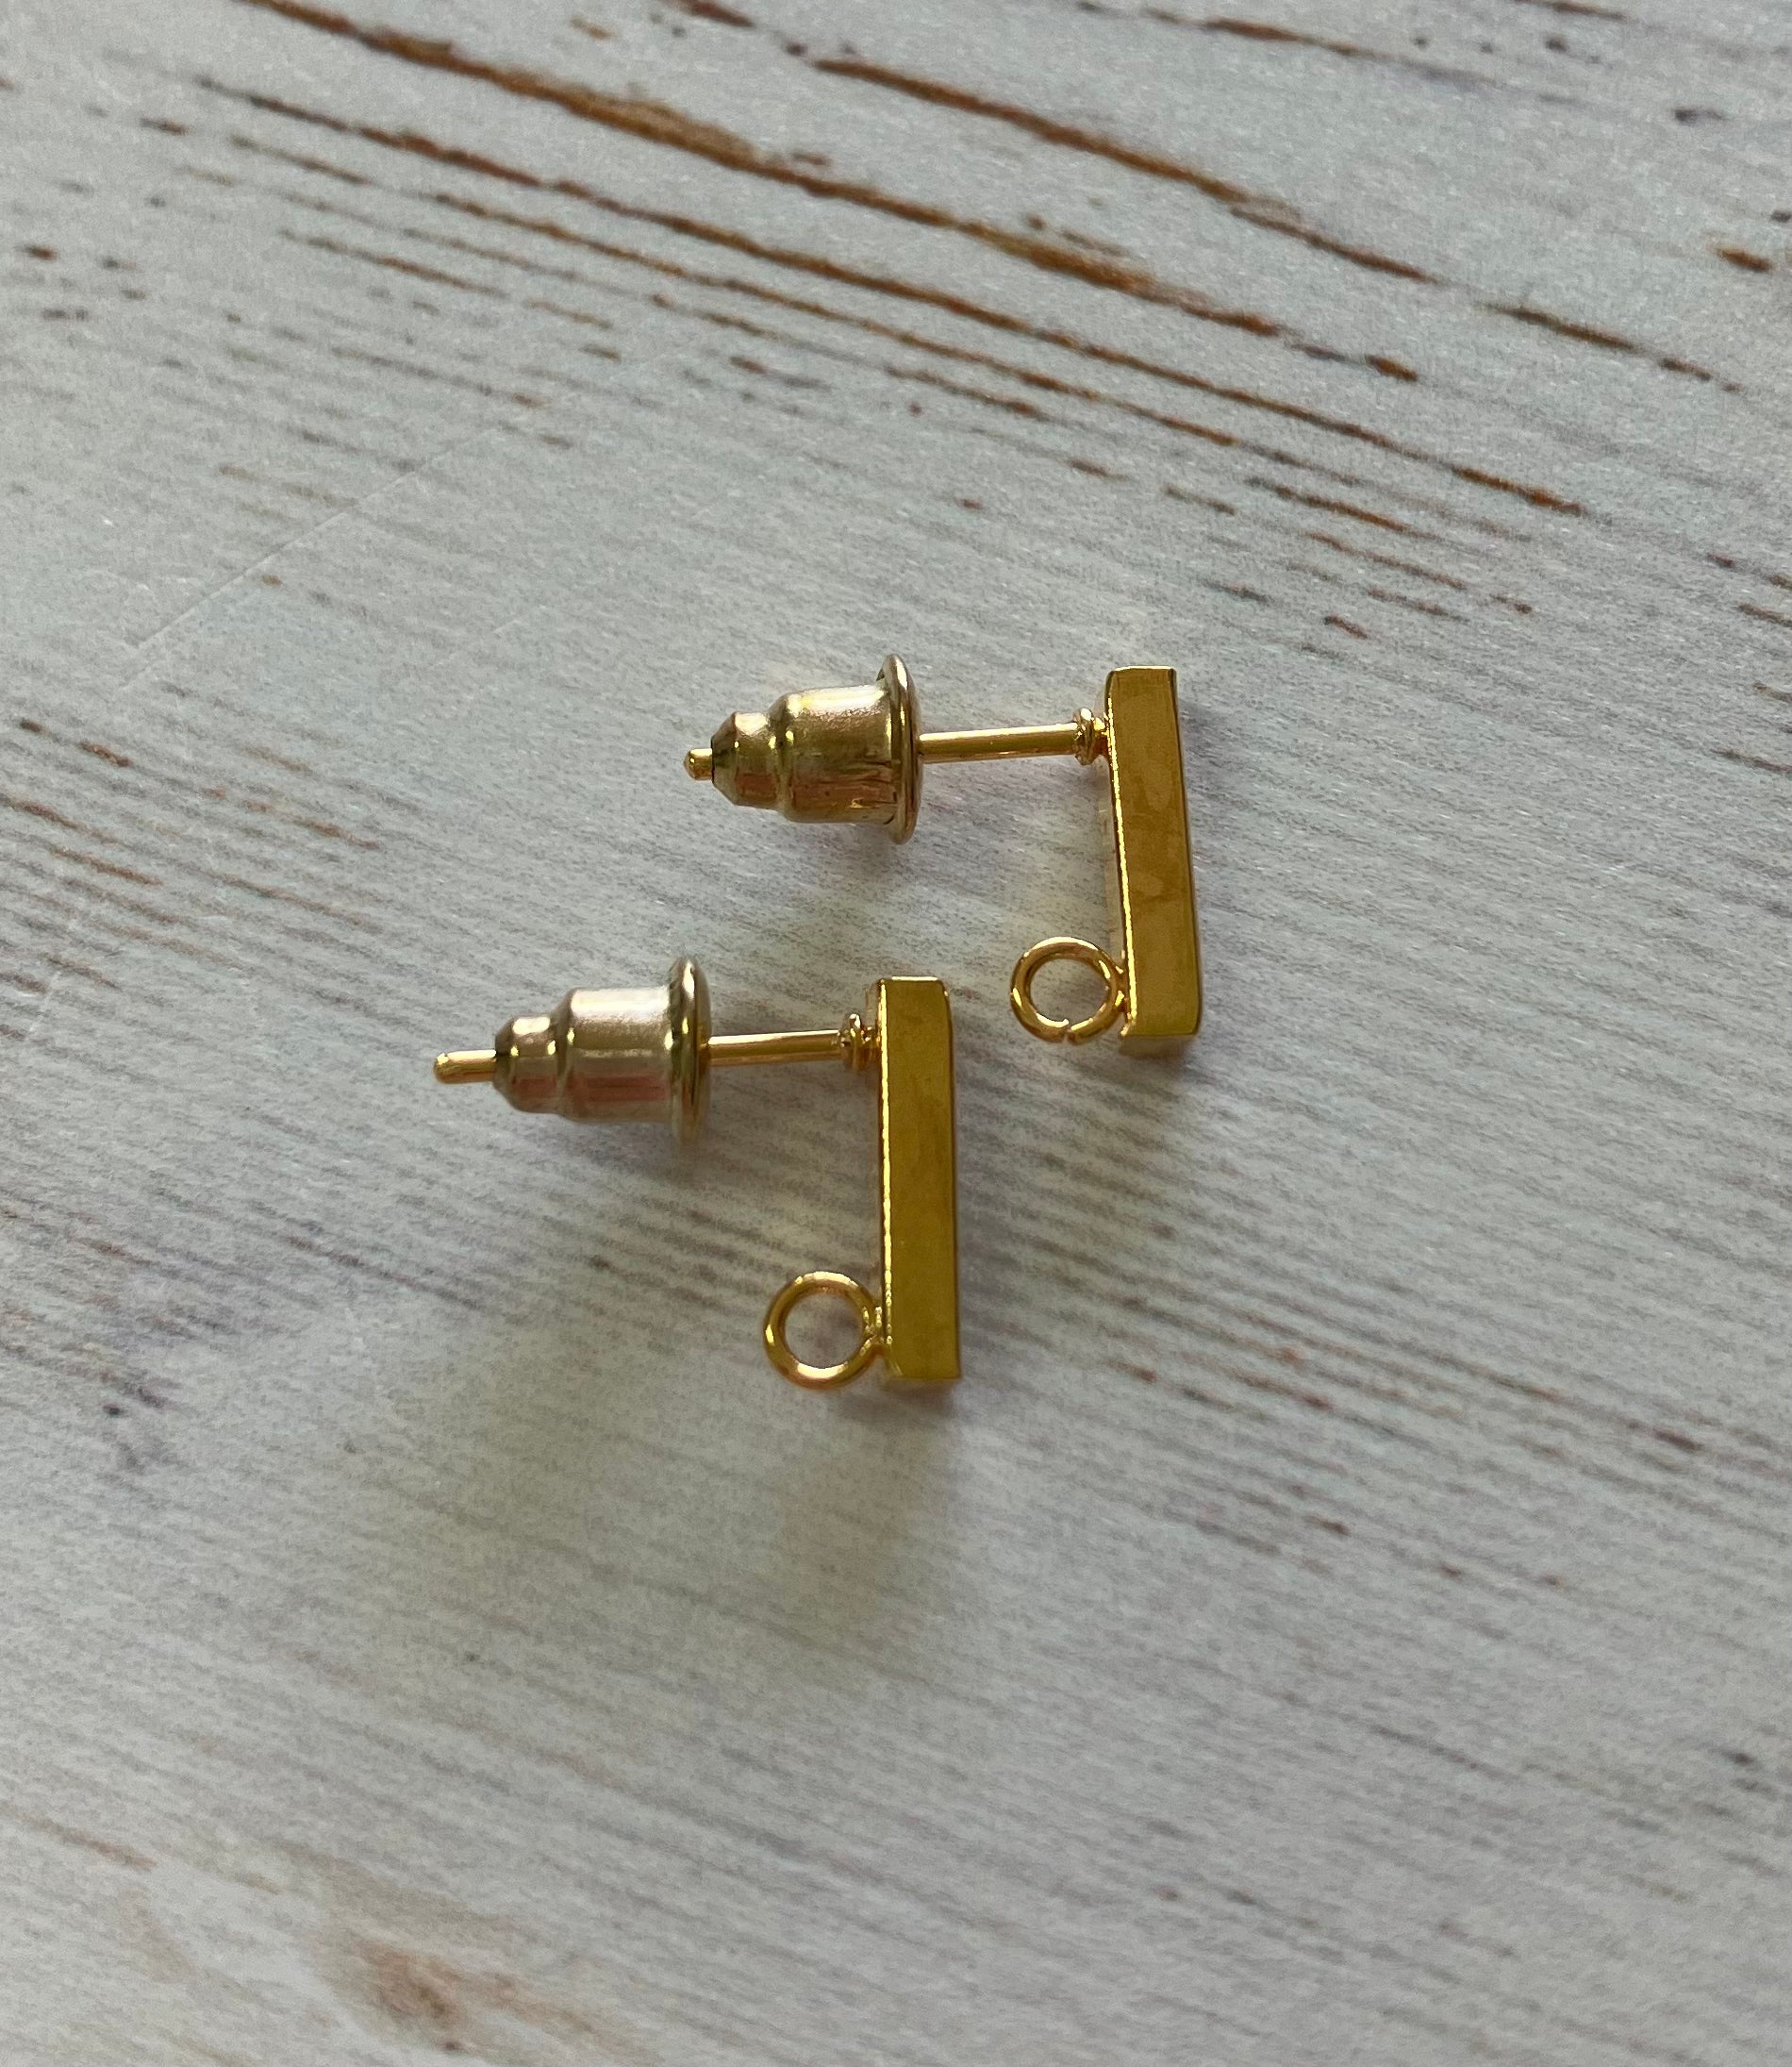 Golden Stainless Steel Stud Earrings with Loop & Backs